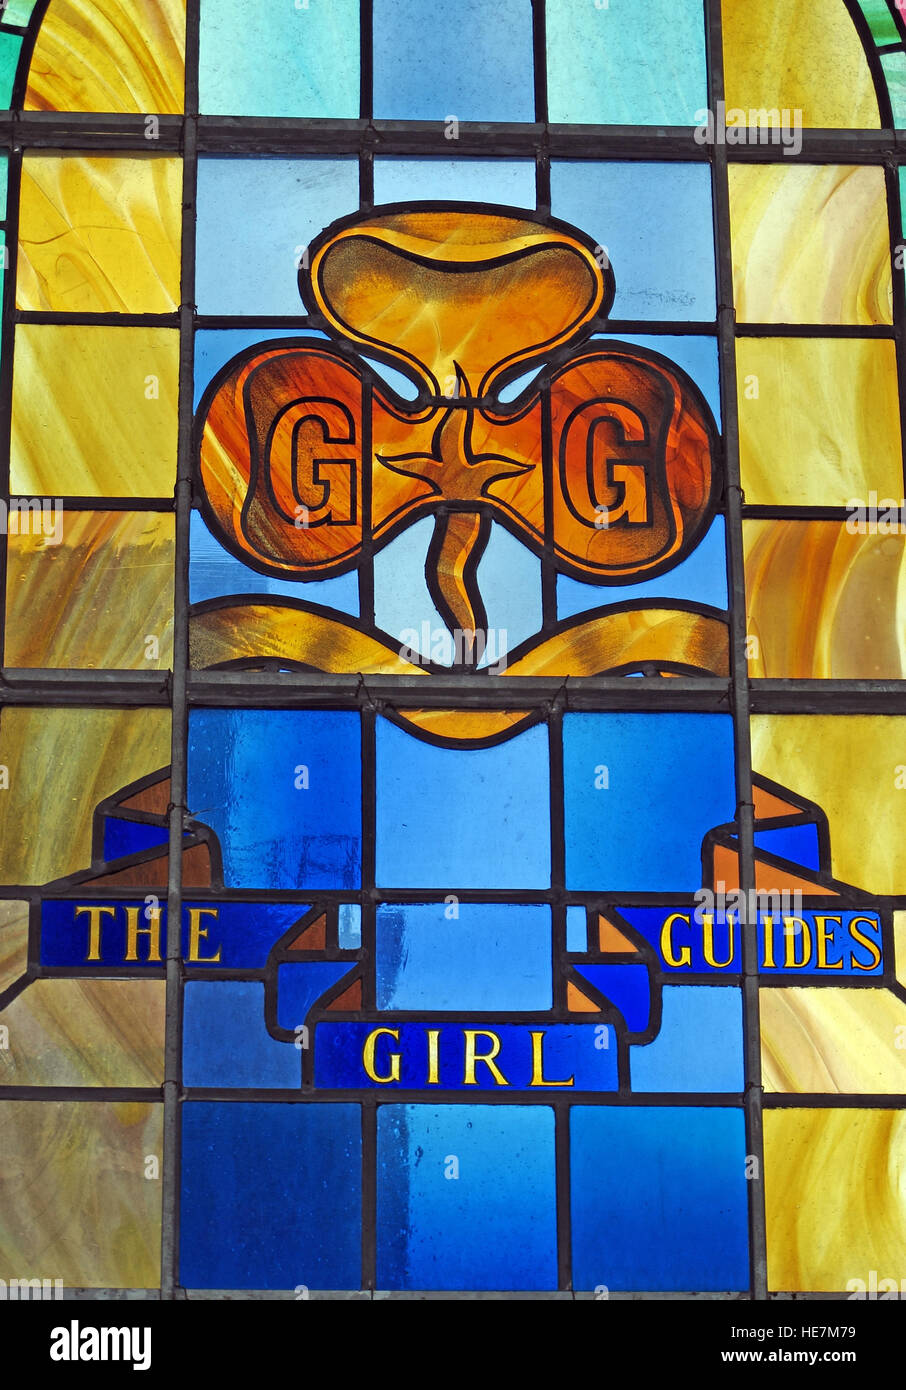 St Annes la cattedrale di Belfast interno,l'girl guides,vetrate colorate Foto Stock